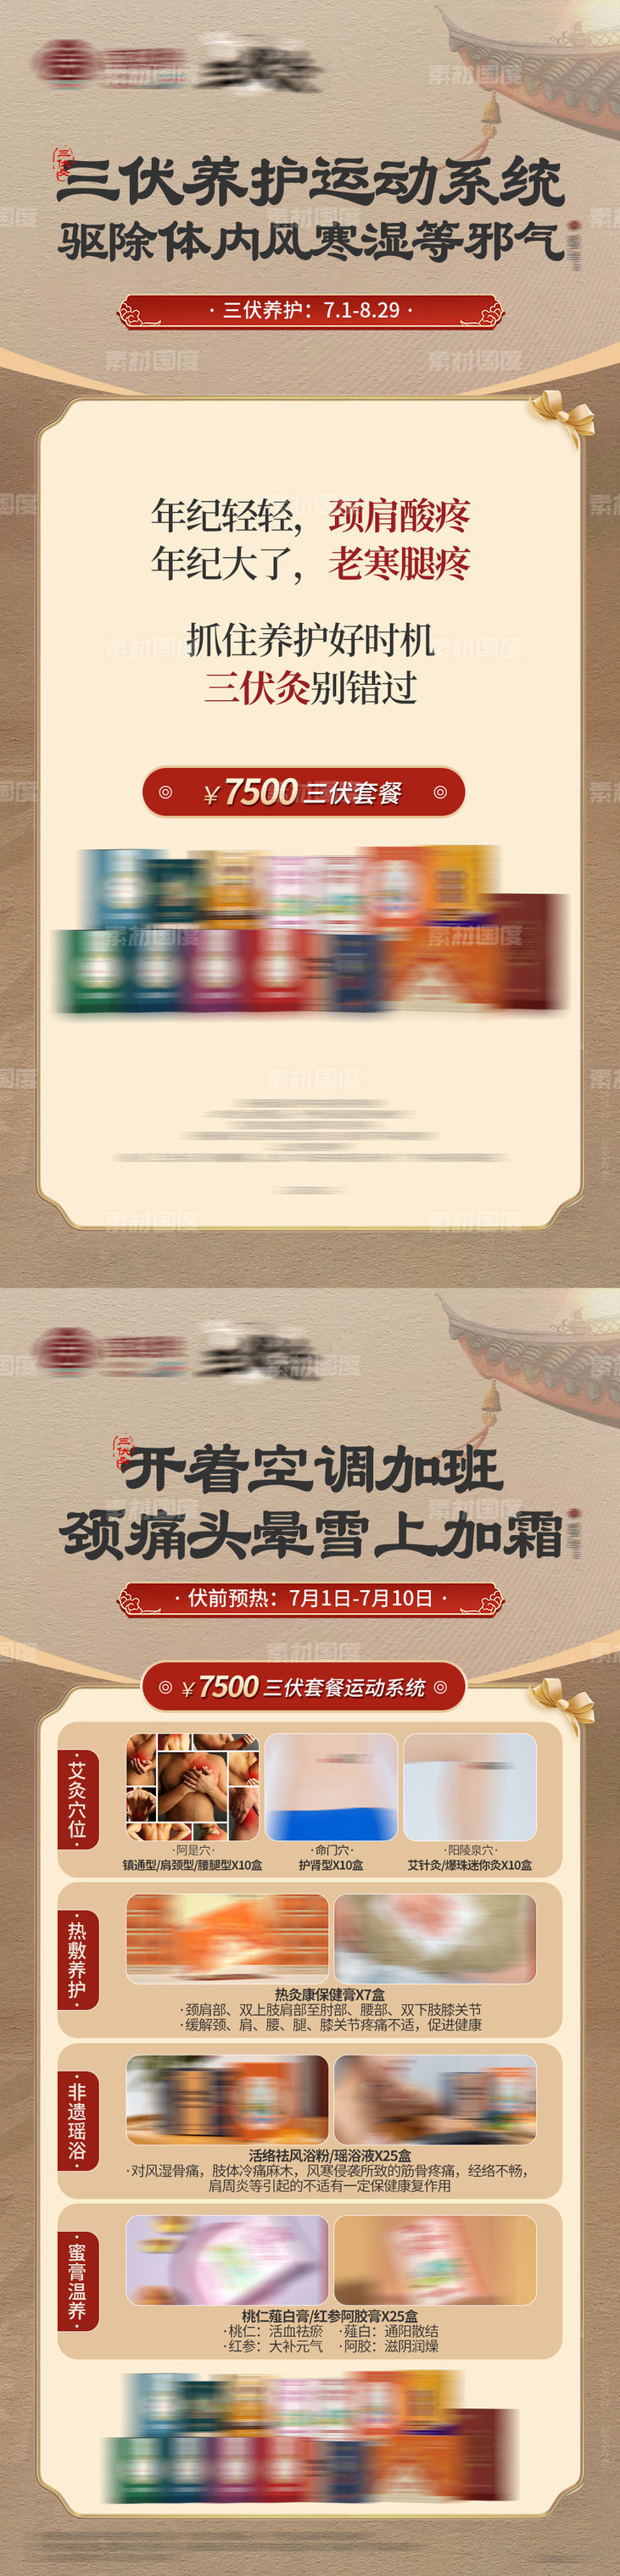 三伏灸中医中式国潮养生产品海报